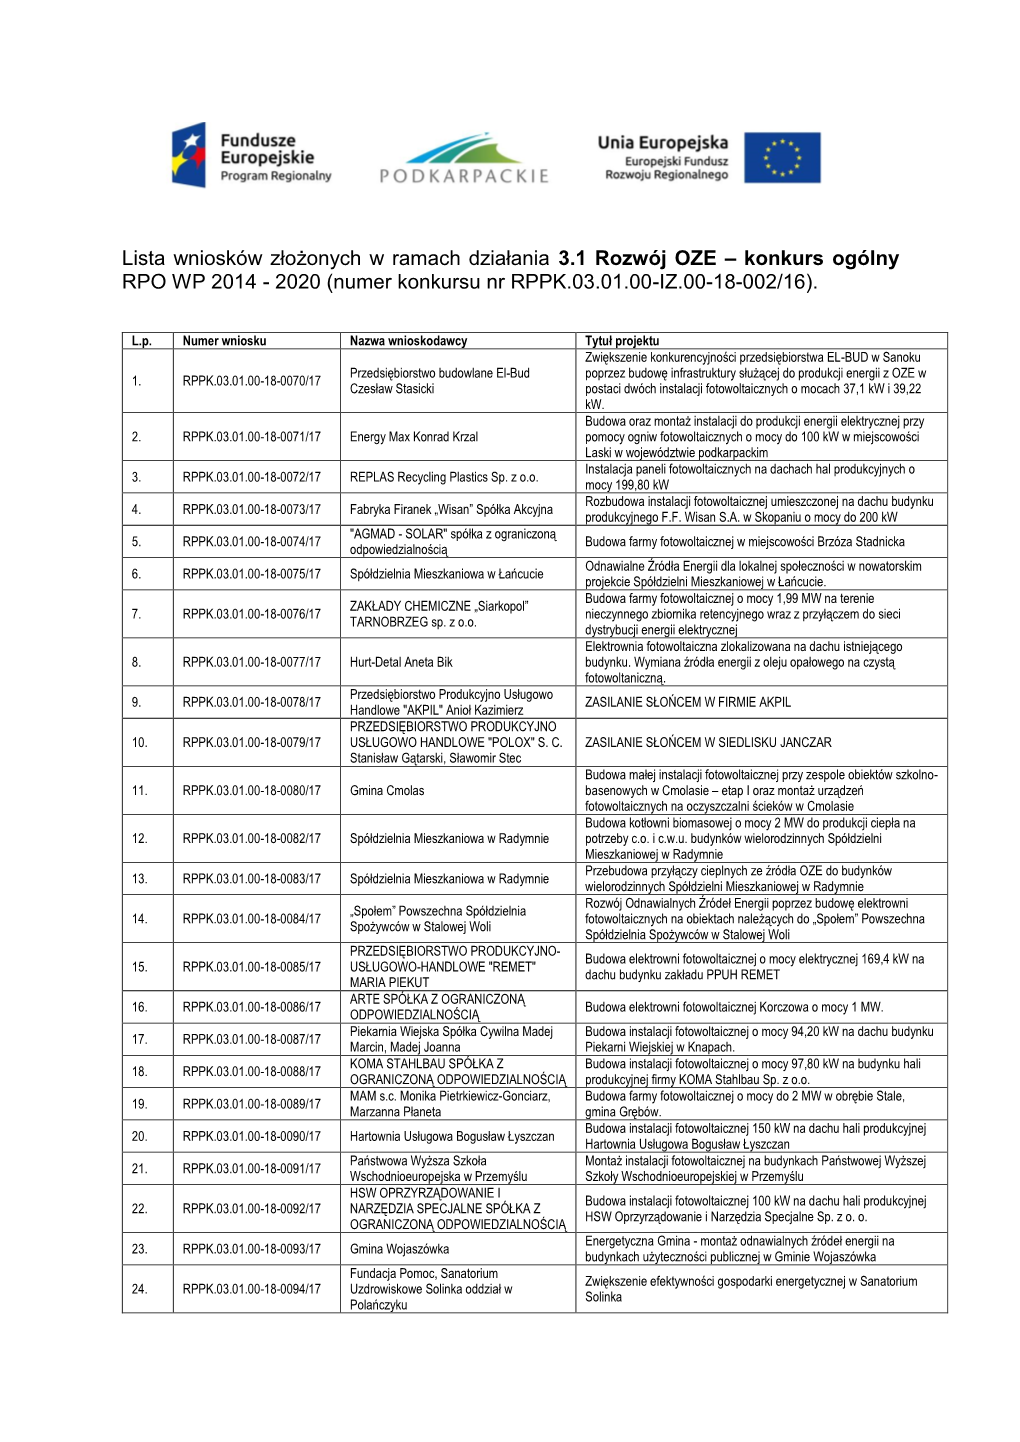 Lista Wniosków Złożonych W Ramach Działania 3.1 Rozwój OZE – Konkurs Ogólny RPO WP 2014 - 2020 (Numer Konkursu Nr RPPK.03.01.00-IZ.00-18-002/16)